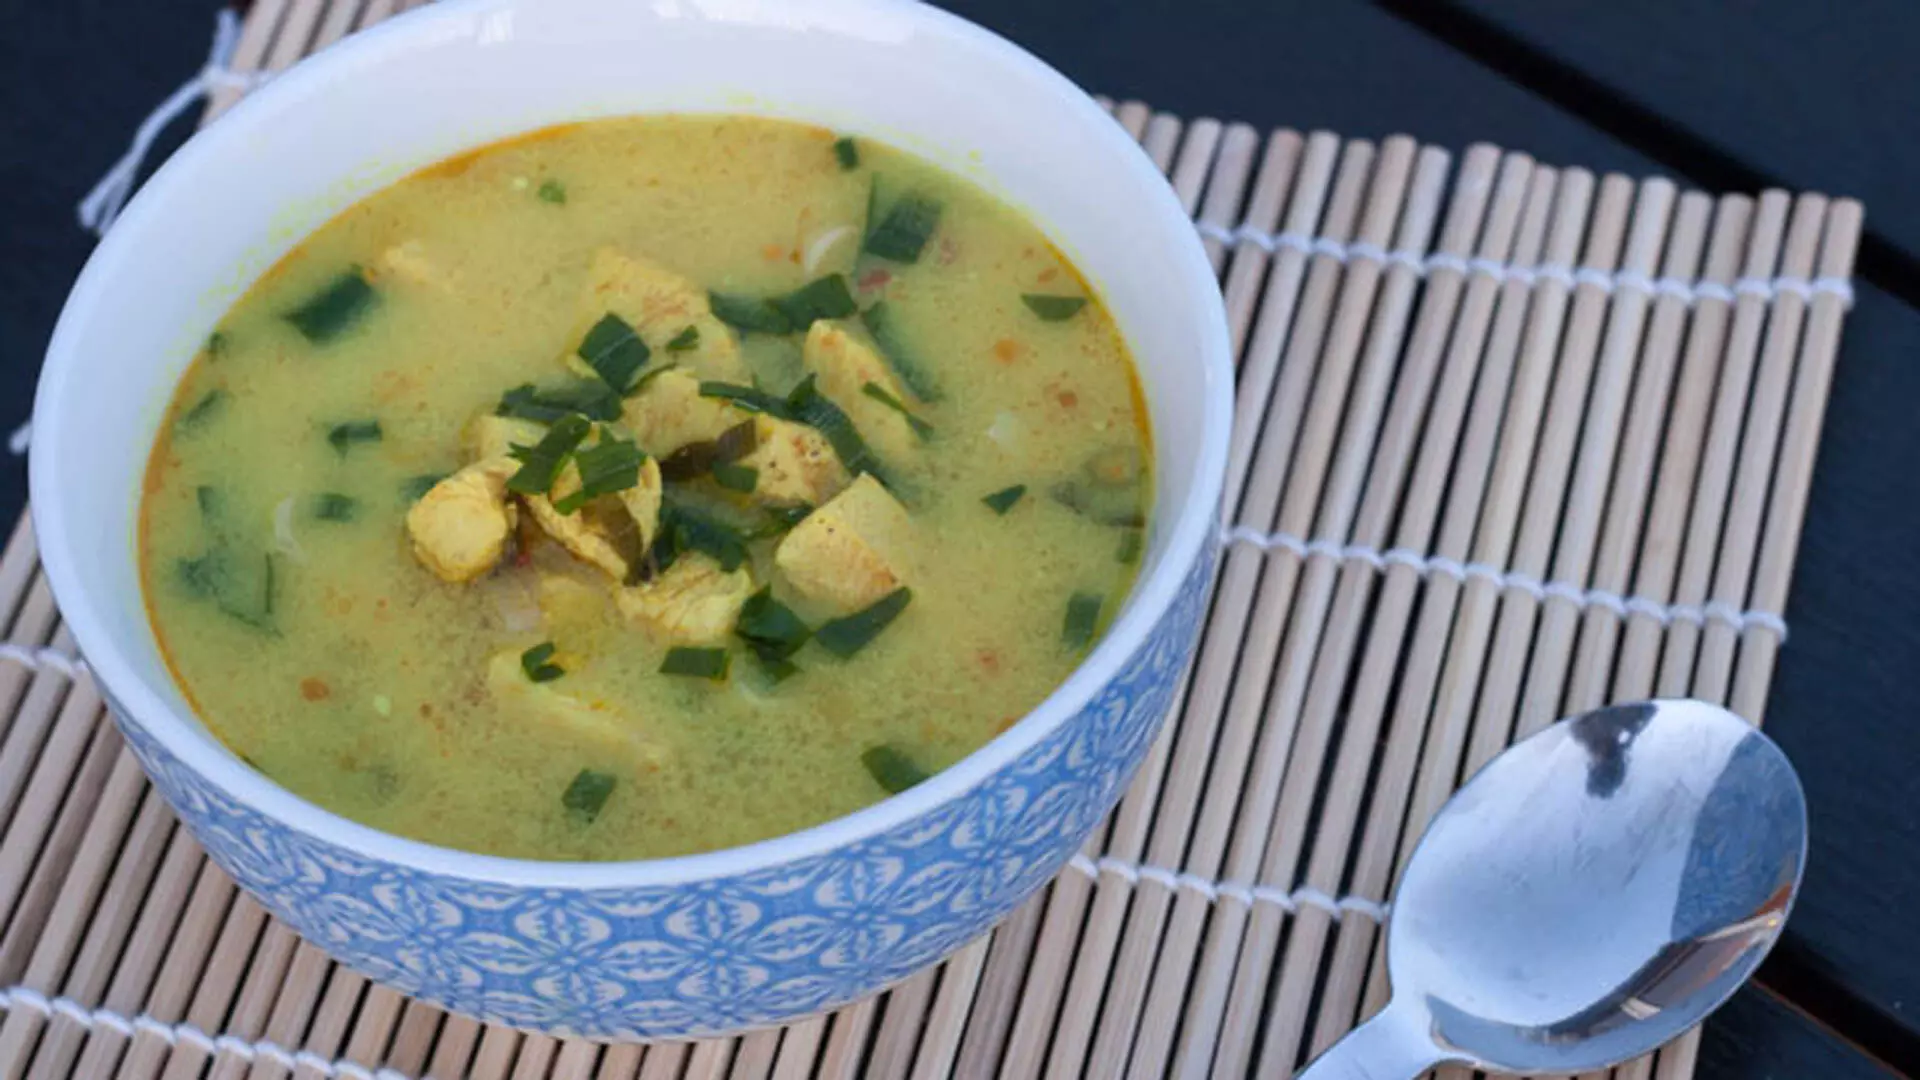 स्वाद के साथ सेहत भी देता है जिंजर सूप, जानें बनाने का तरीका